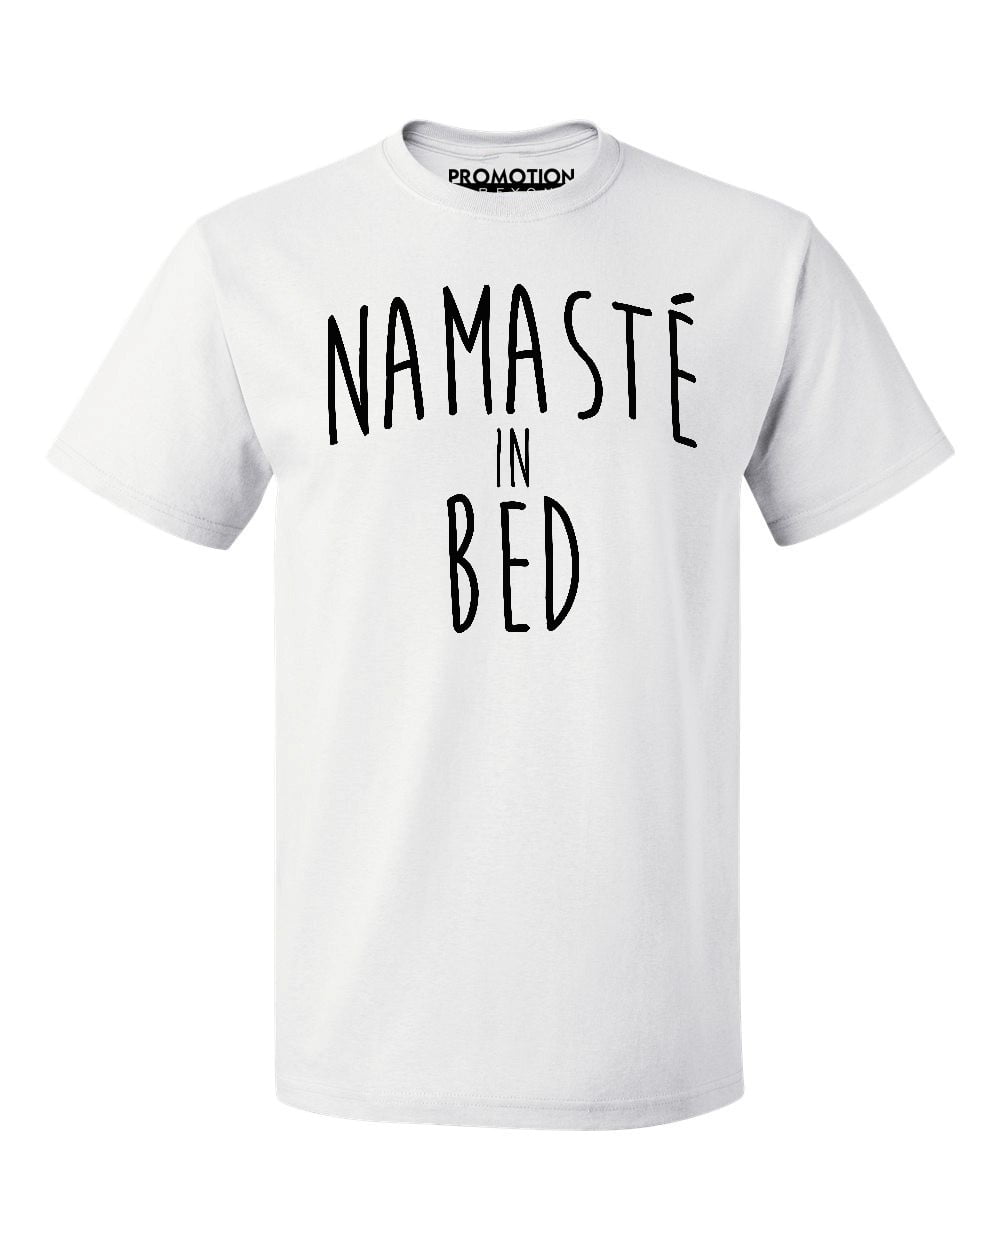 schuif postkantoor muziek P&B Namaste In Bed Men's T-shirt, M, White - Walmart.com